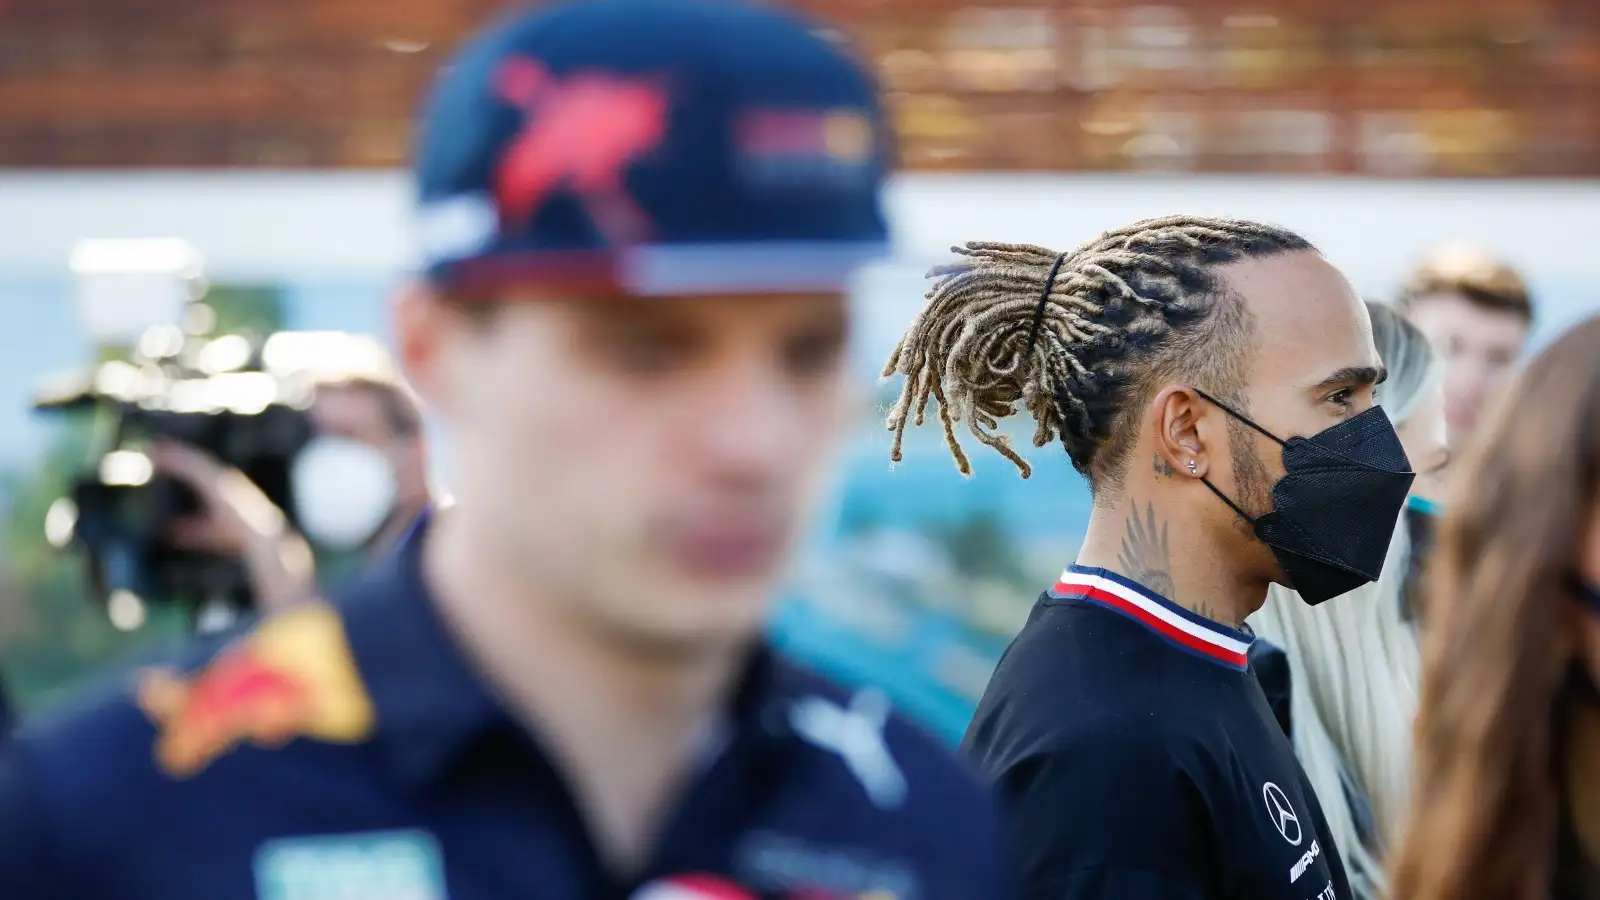 Max Verstappen blurred, Lewis Hamilton is in focus. Australia, April 2022.